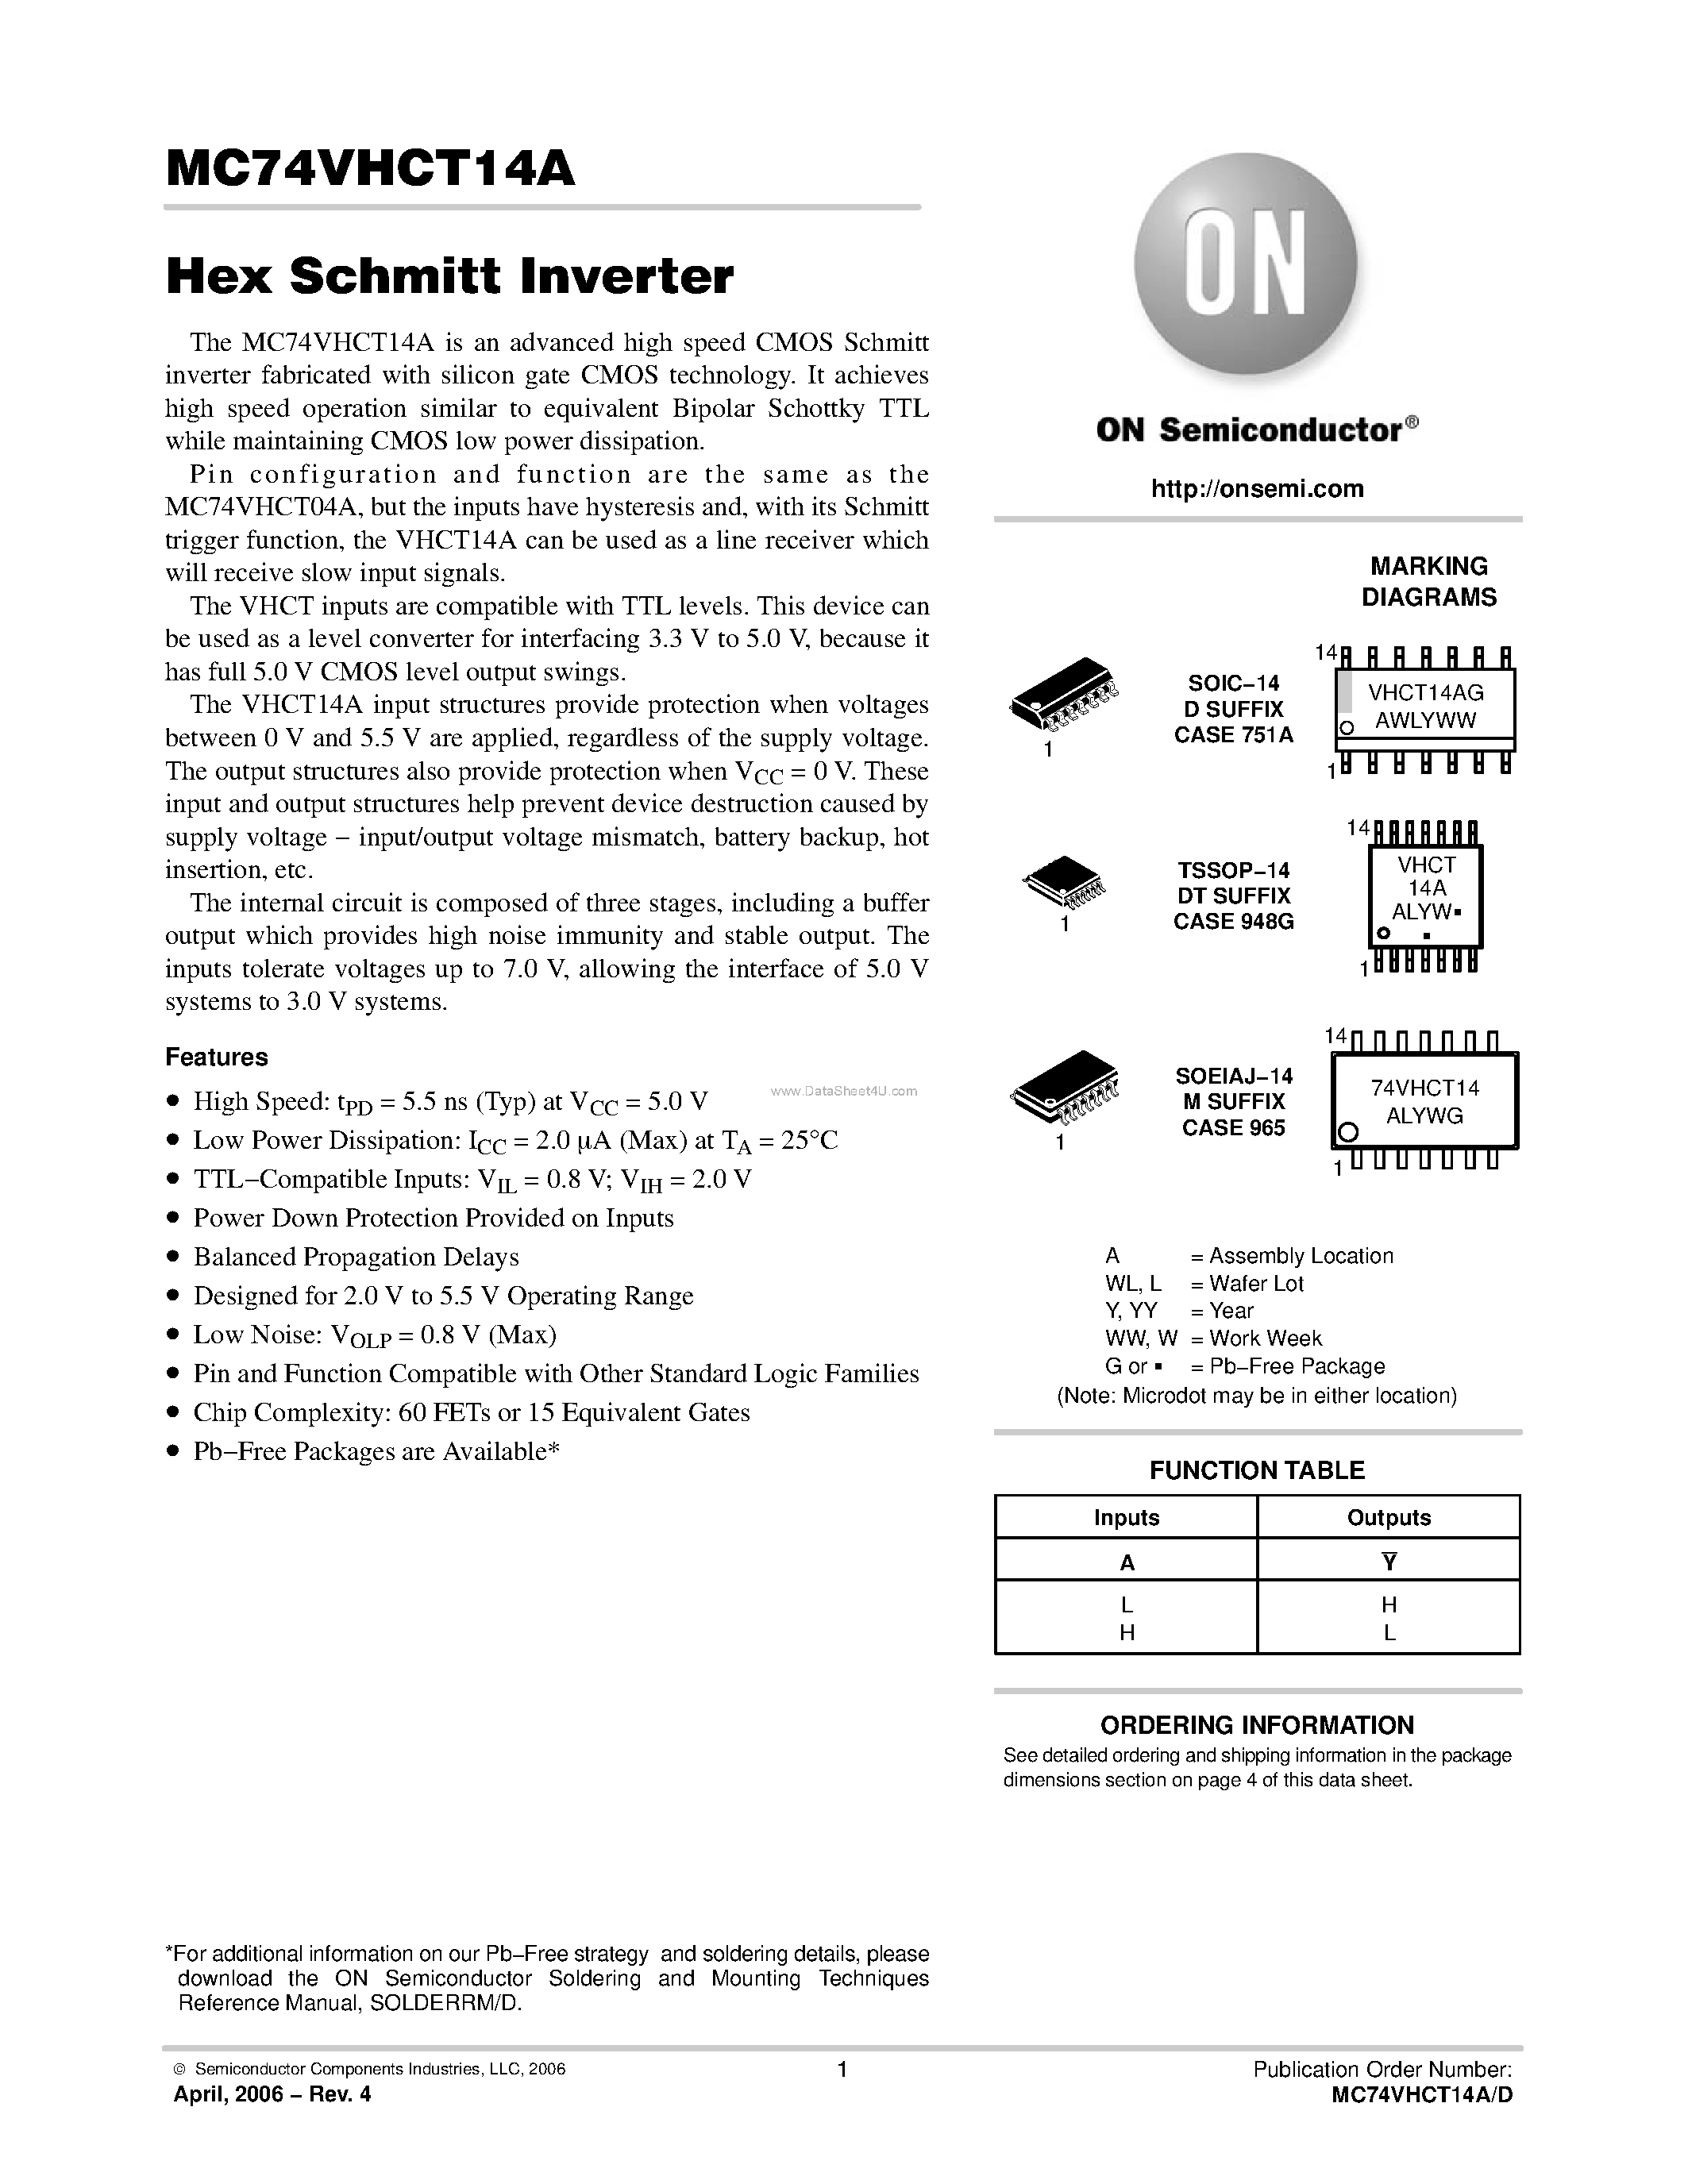 Datasheet MC74VHCT14A - Hex Schmitt Inverter page 1